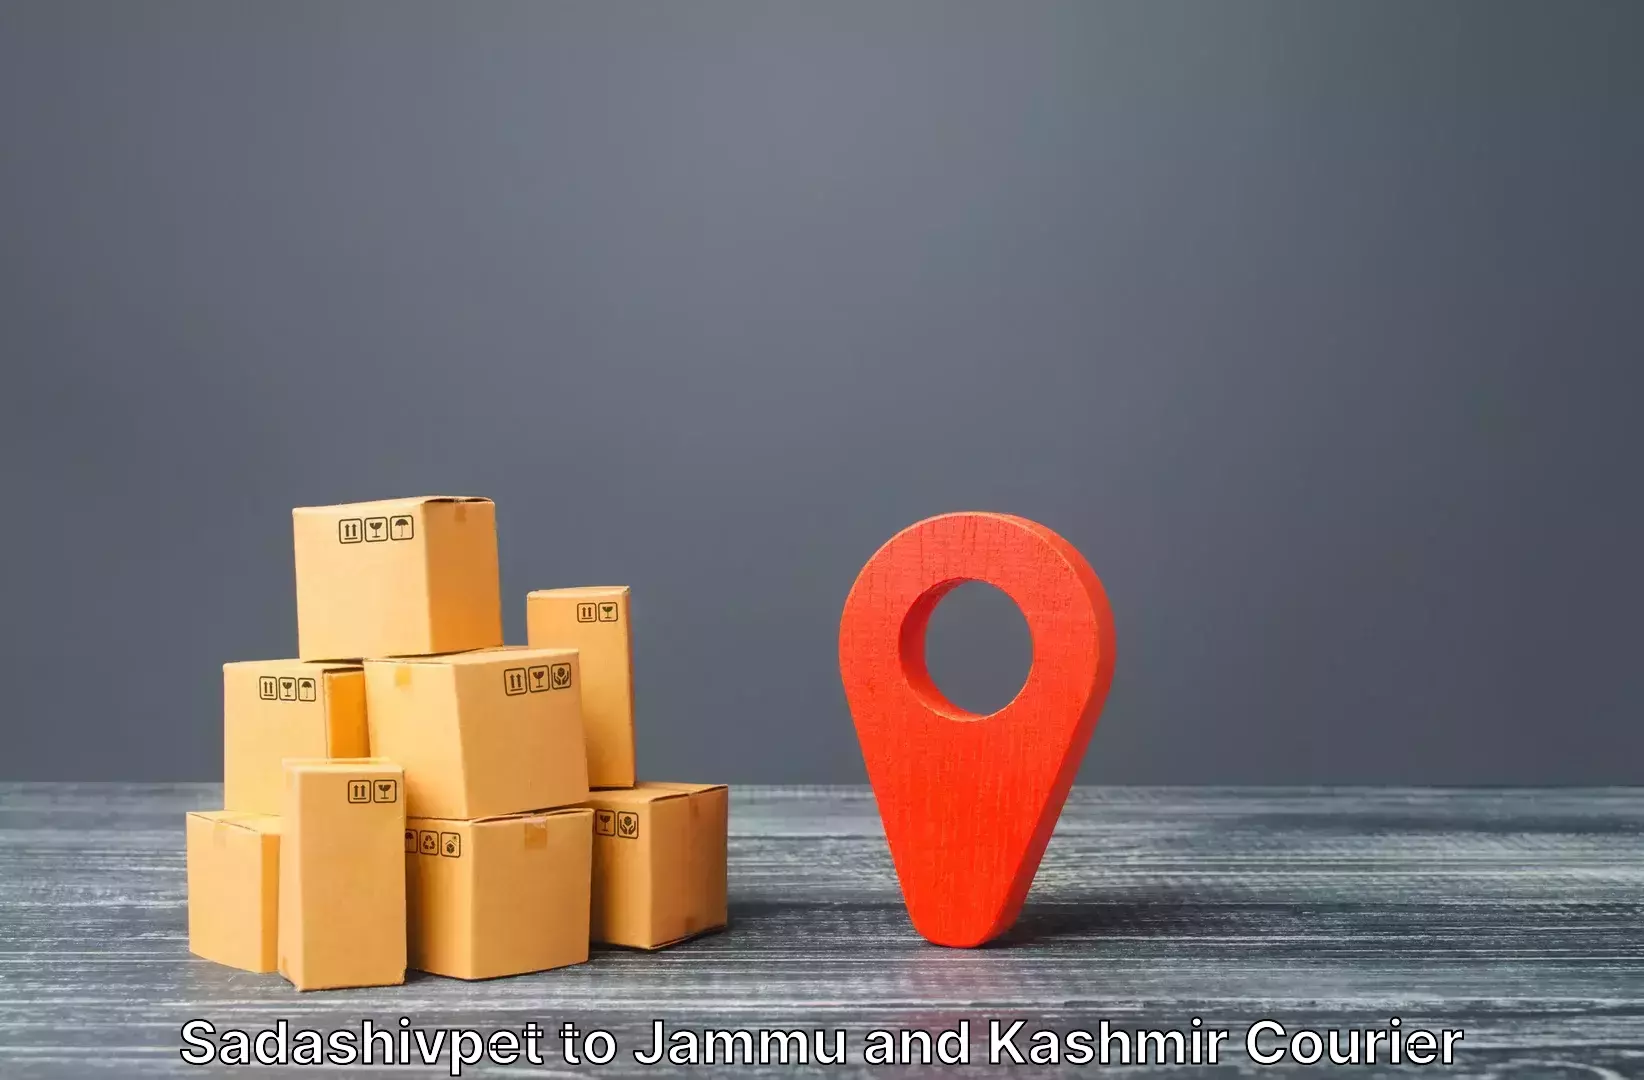 Luggage shipping specialists Sadashivpet to University of Jammu